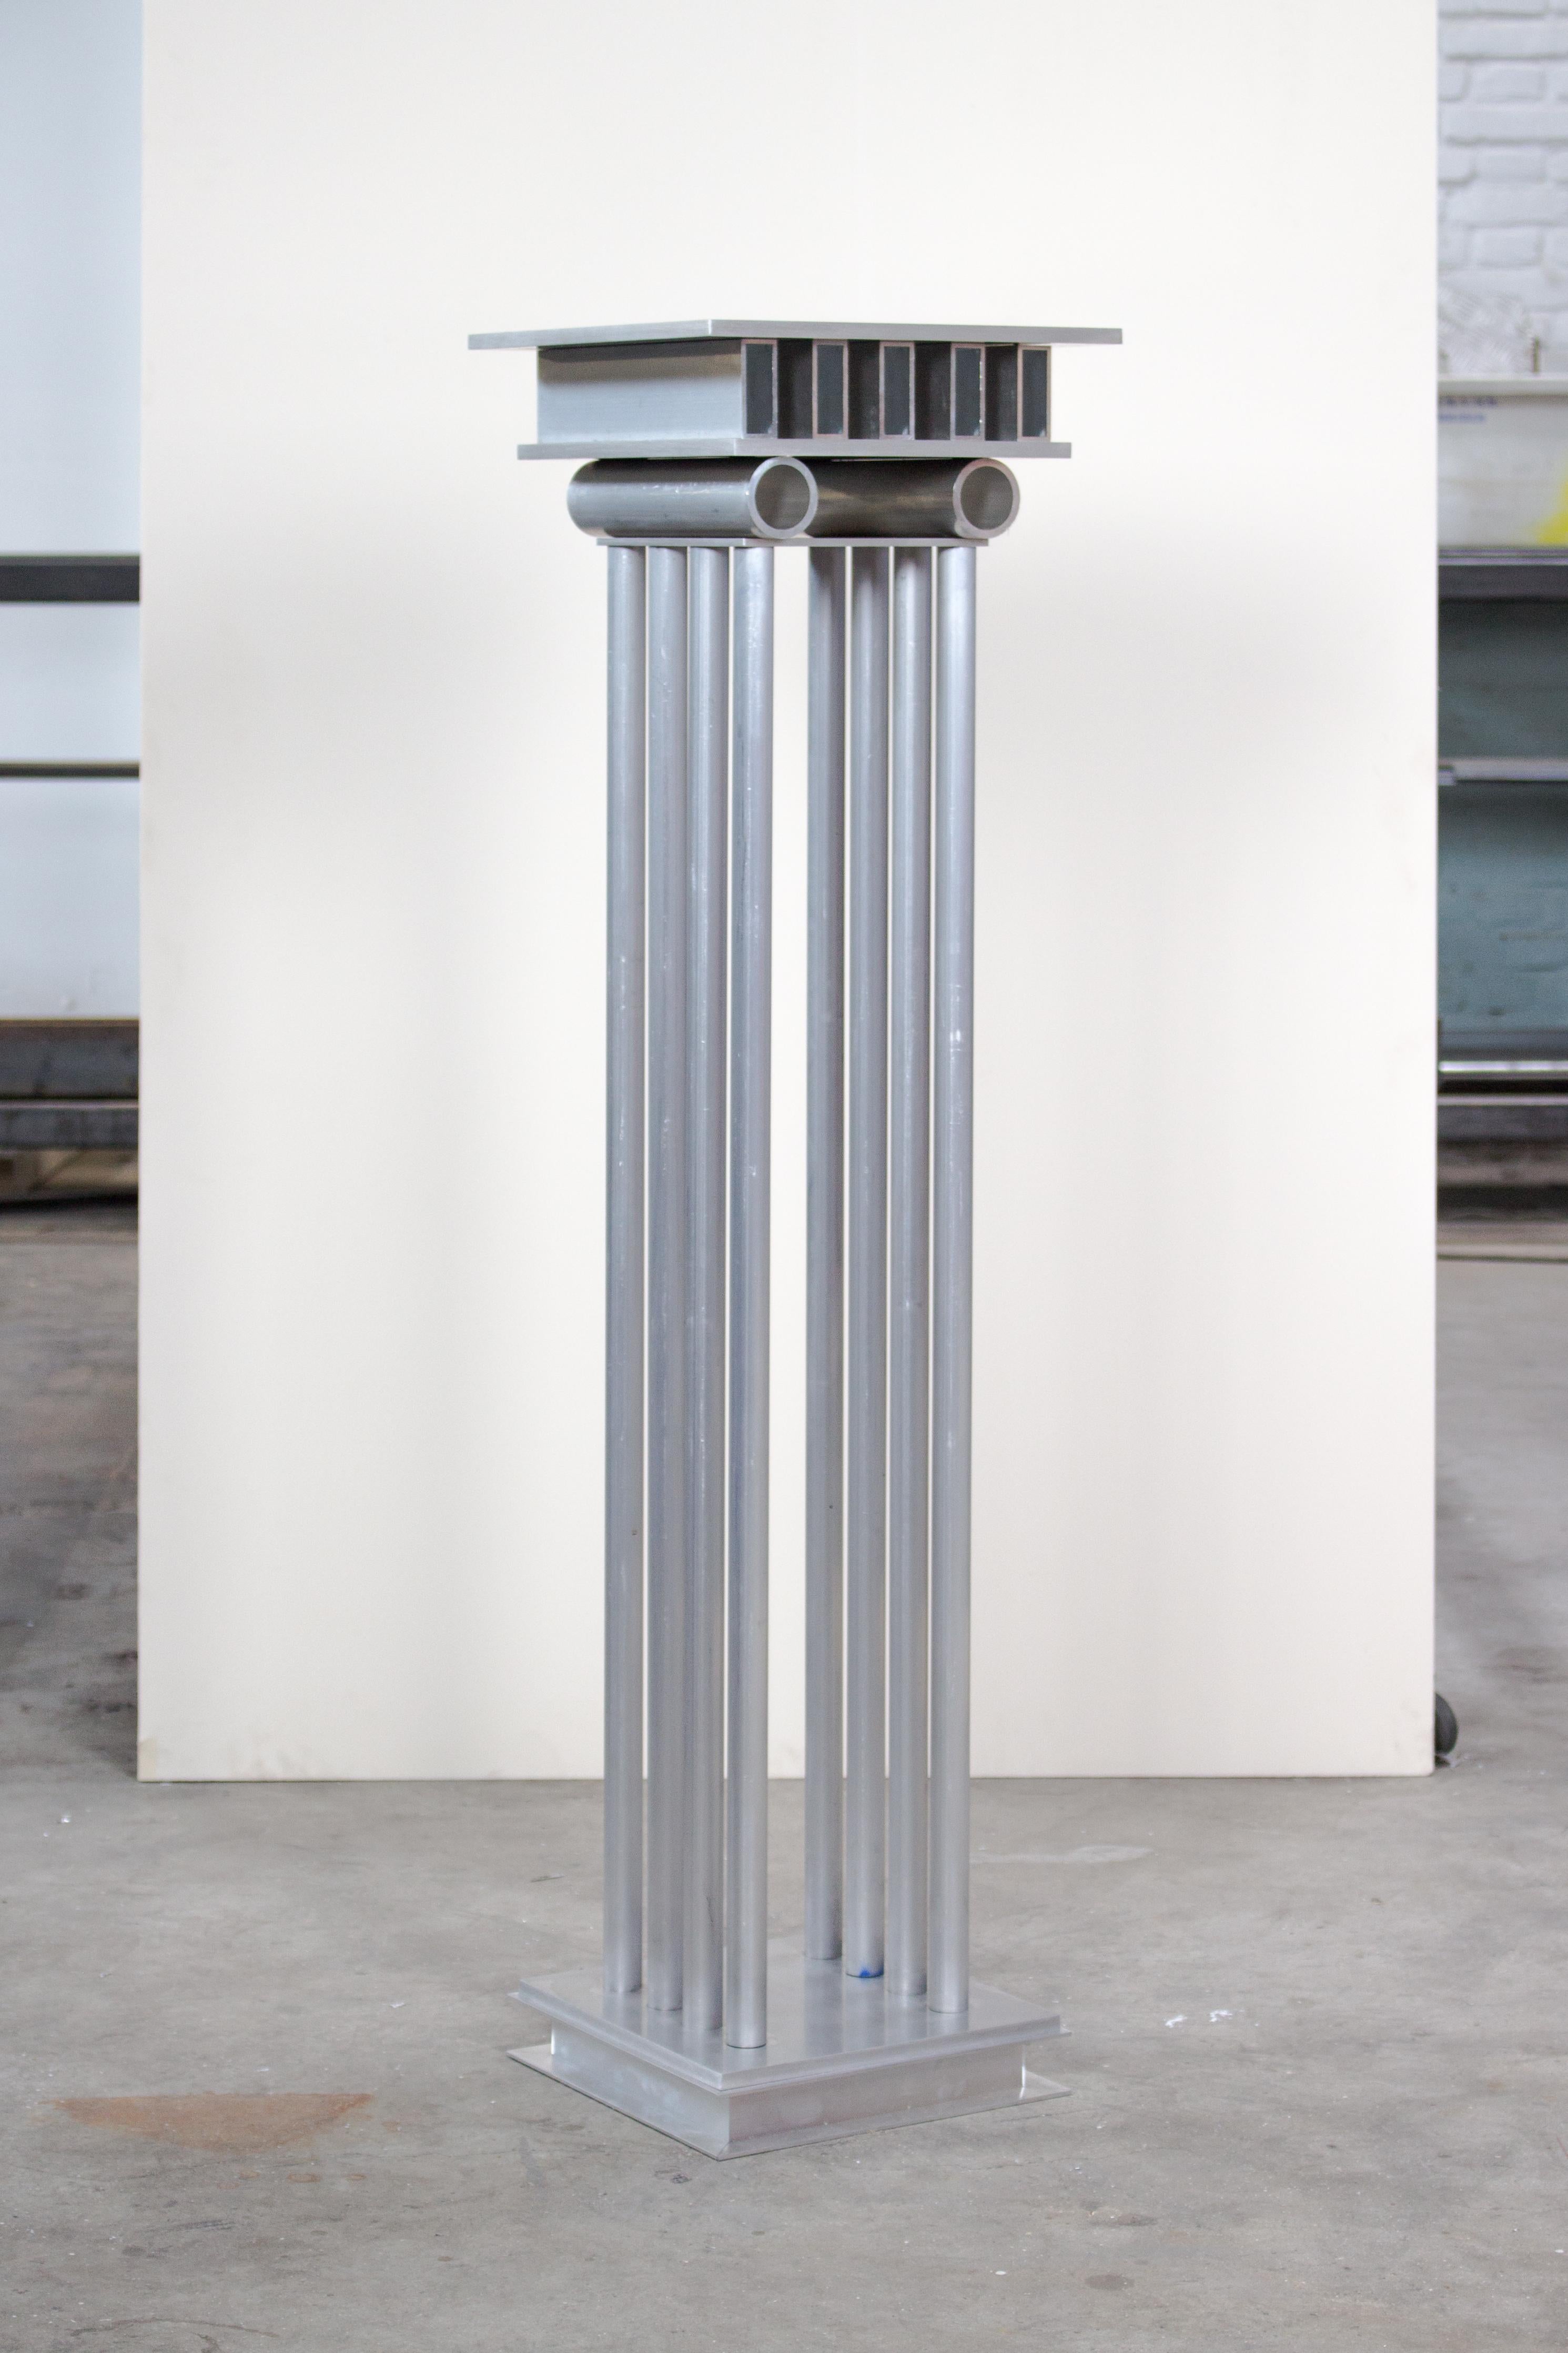 Metope-Säule von Joachim-Morineau Studio
Limitierte Auflage von 8 Stück
Abmessungen: H 110 x T 30 x B 30 cm, 18 kg
MATERIALIEN: Aluminiumrohre, -profile, -schrauben und -bleche
Es besteht die Möglichkeit, eine andere Farbe/ein anderes Finish zu